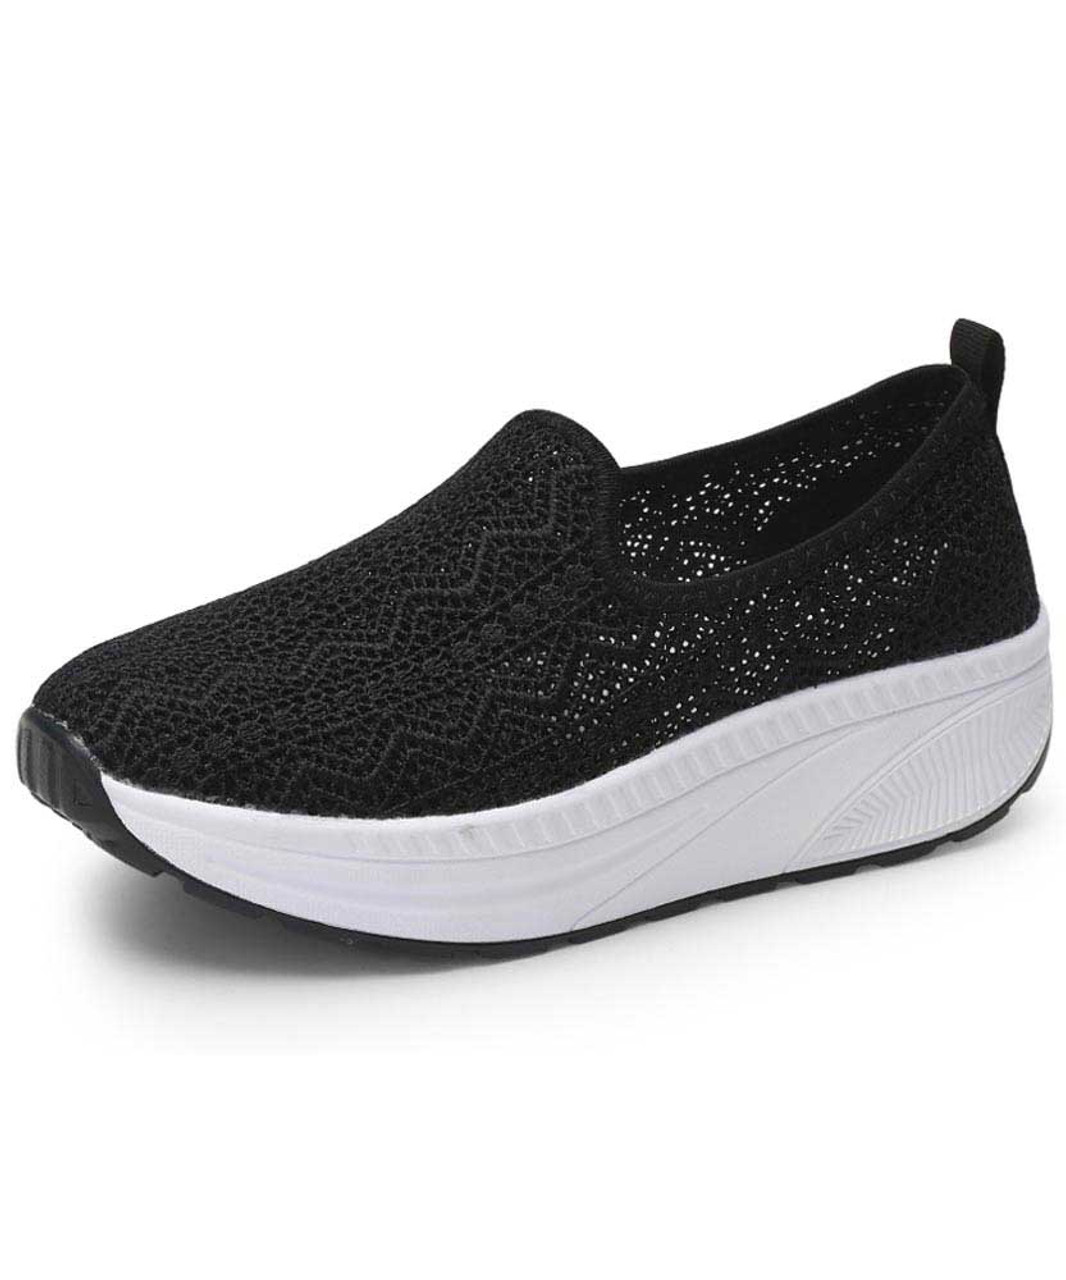 Black flyknit texture slip on rocker bottom shoe sneaker | Womens ...